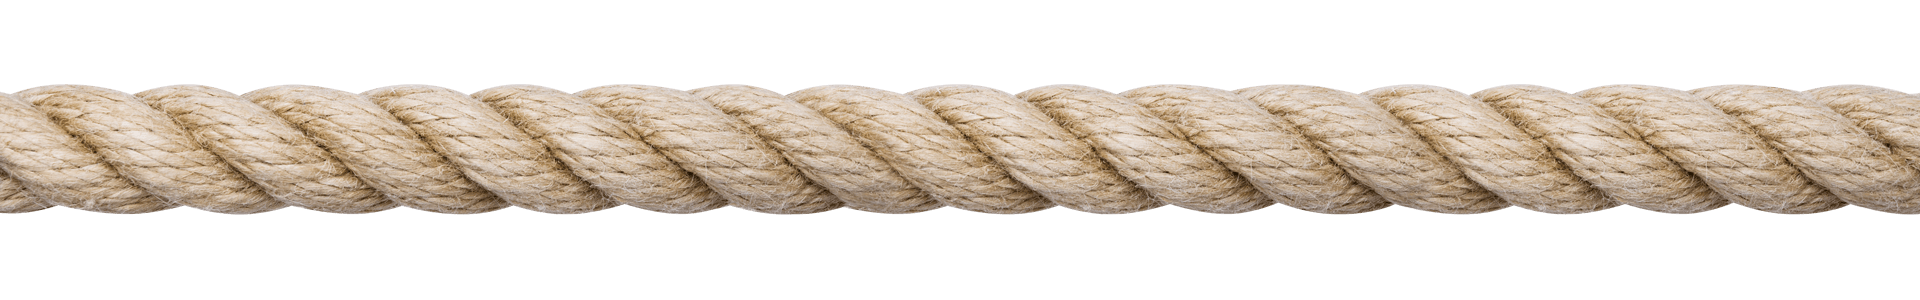 Southern Ropes Hemptex - Synthetic Hemp Rope